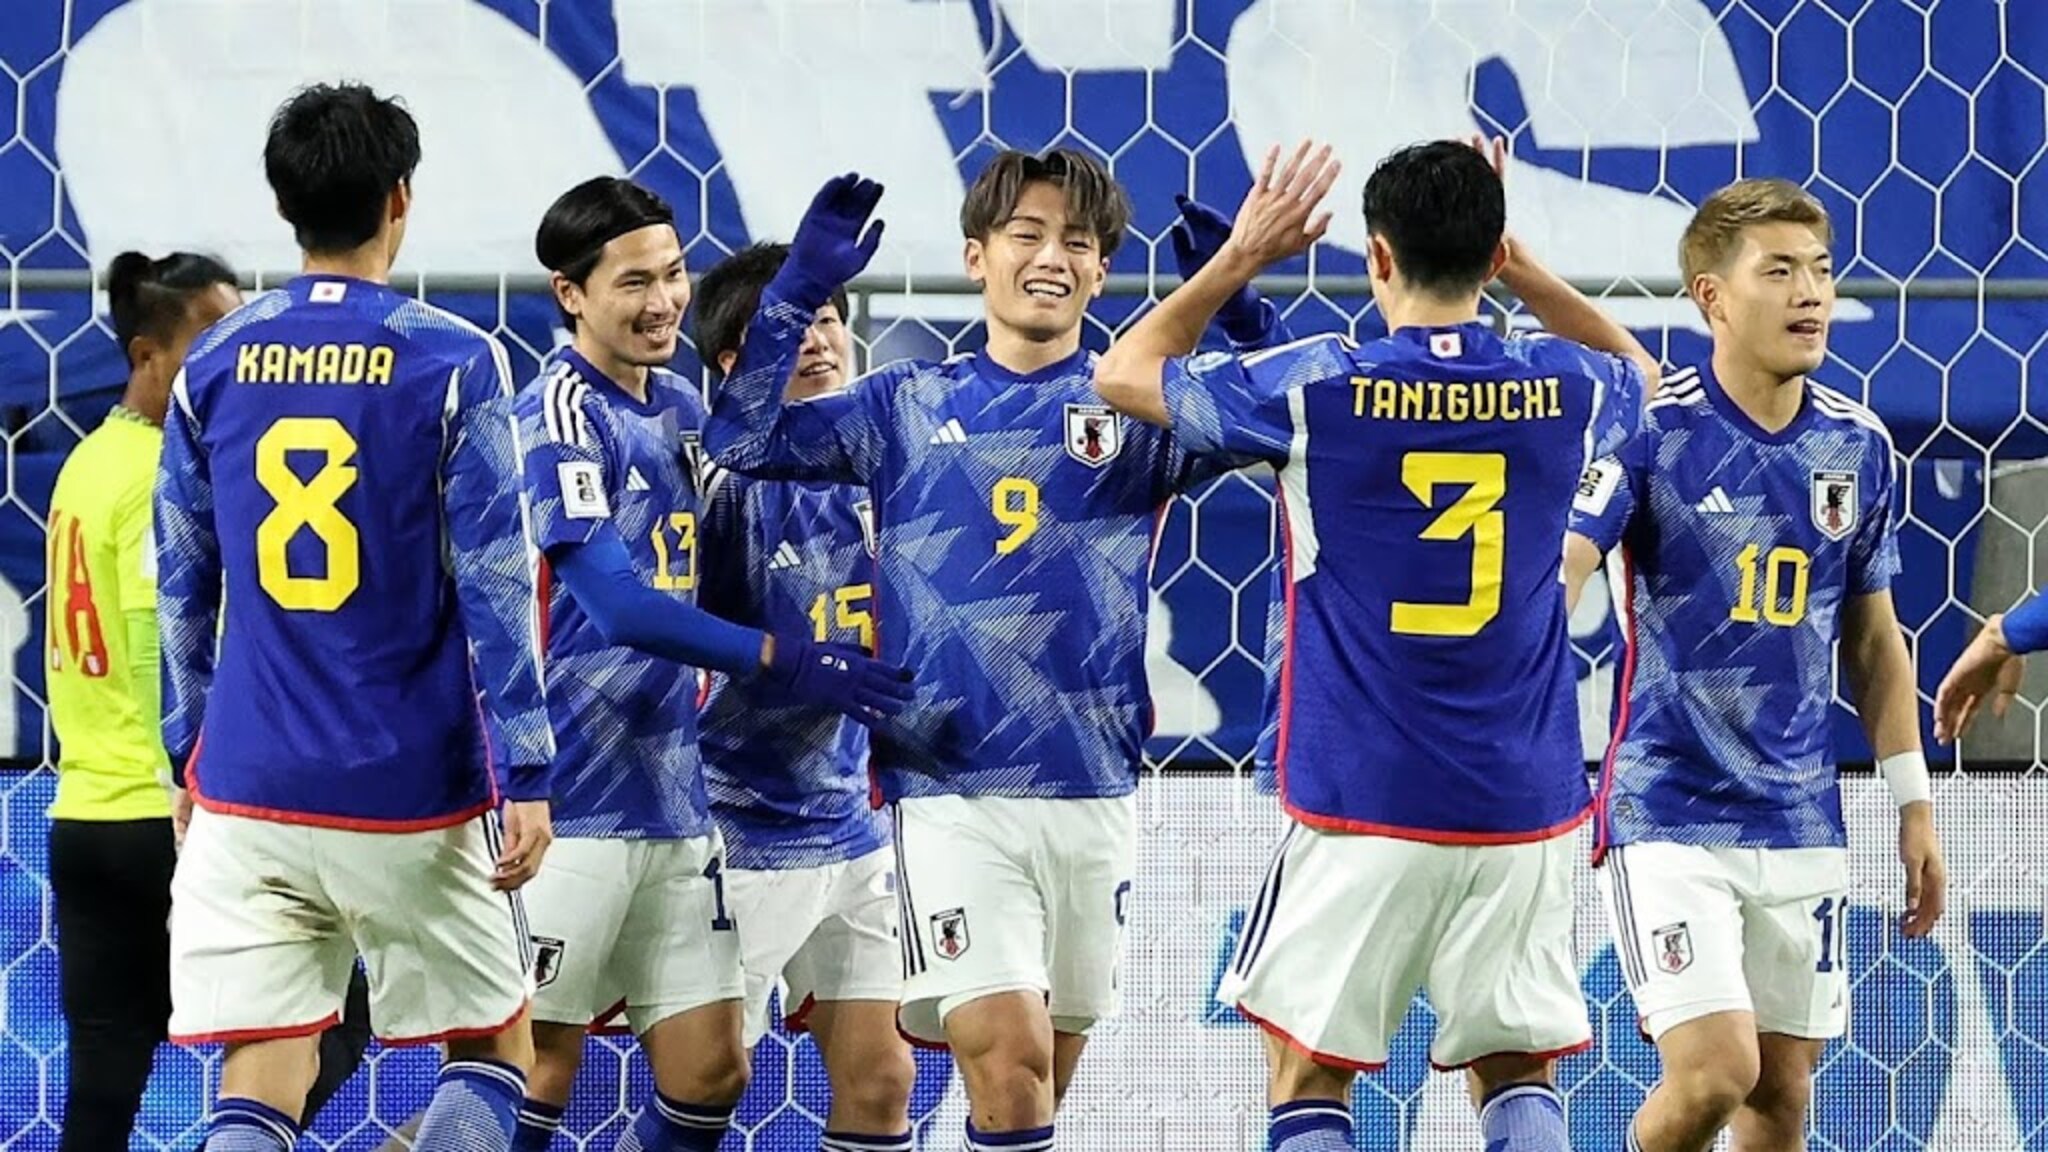 Hậu vệ tuyển Nhật Bản thừa nhận 'không đủ năng lực' - Ảnh 1